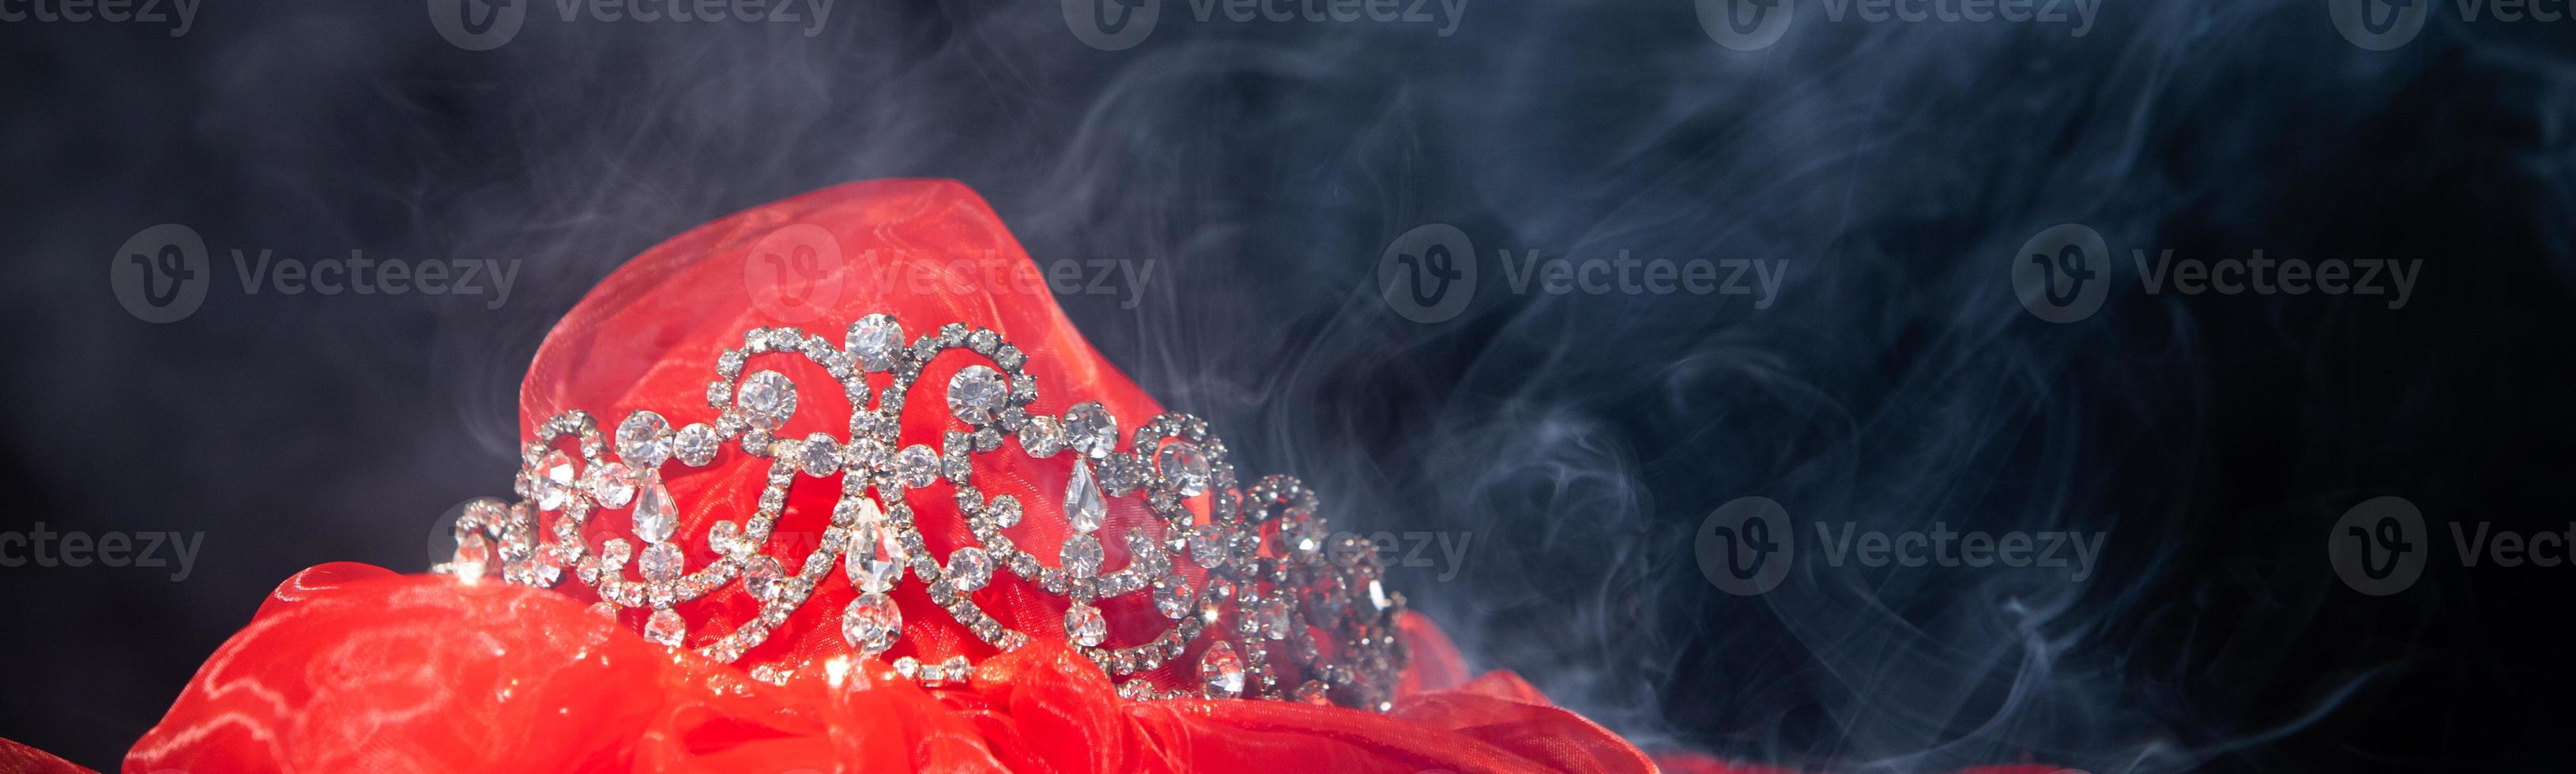 coroa de prata de diamante para concurso de rainha de beleza de concurso de miss, tiara de cristal, joias decoradas, pedras preciosas e bokeh, faíscando banner de espaço de cópia de fundo escuro abstrato foto